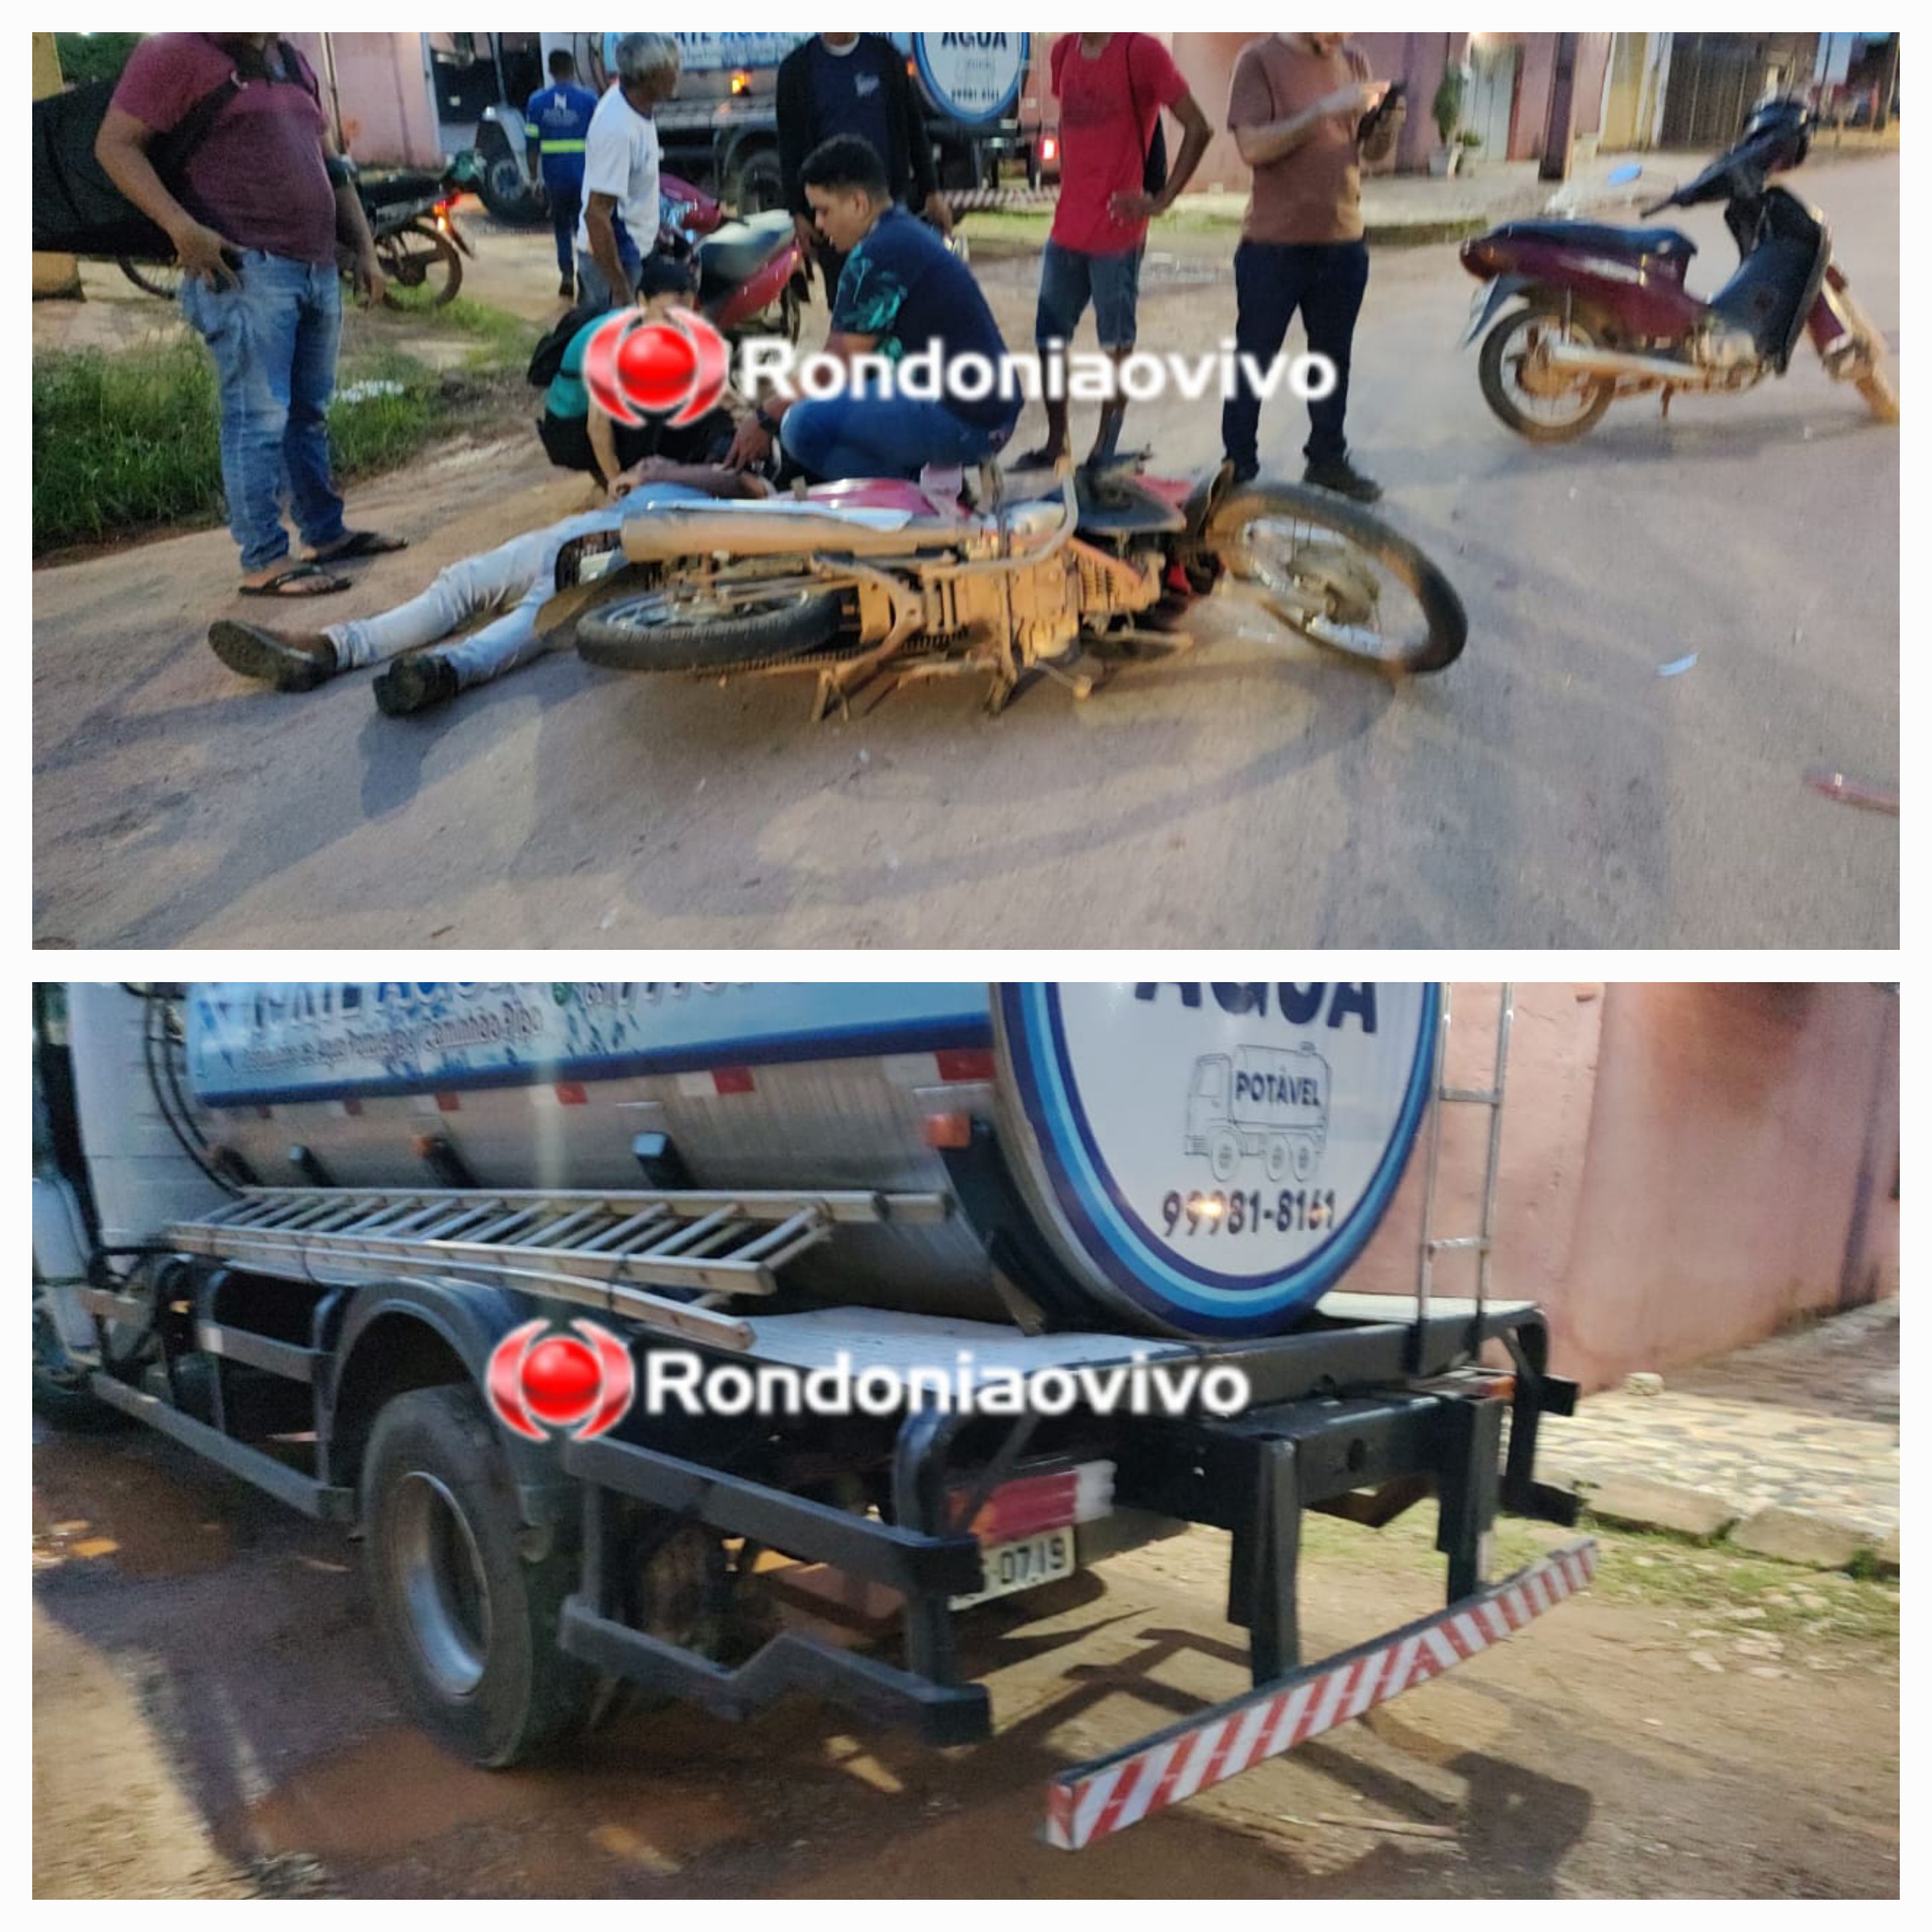 NA AMAZONAS: Motociclista fica gravemente ferido em acidente envolvendo caminhão